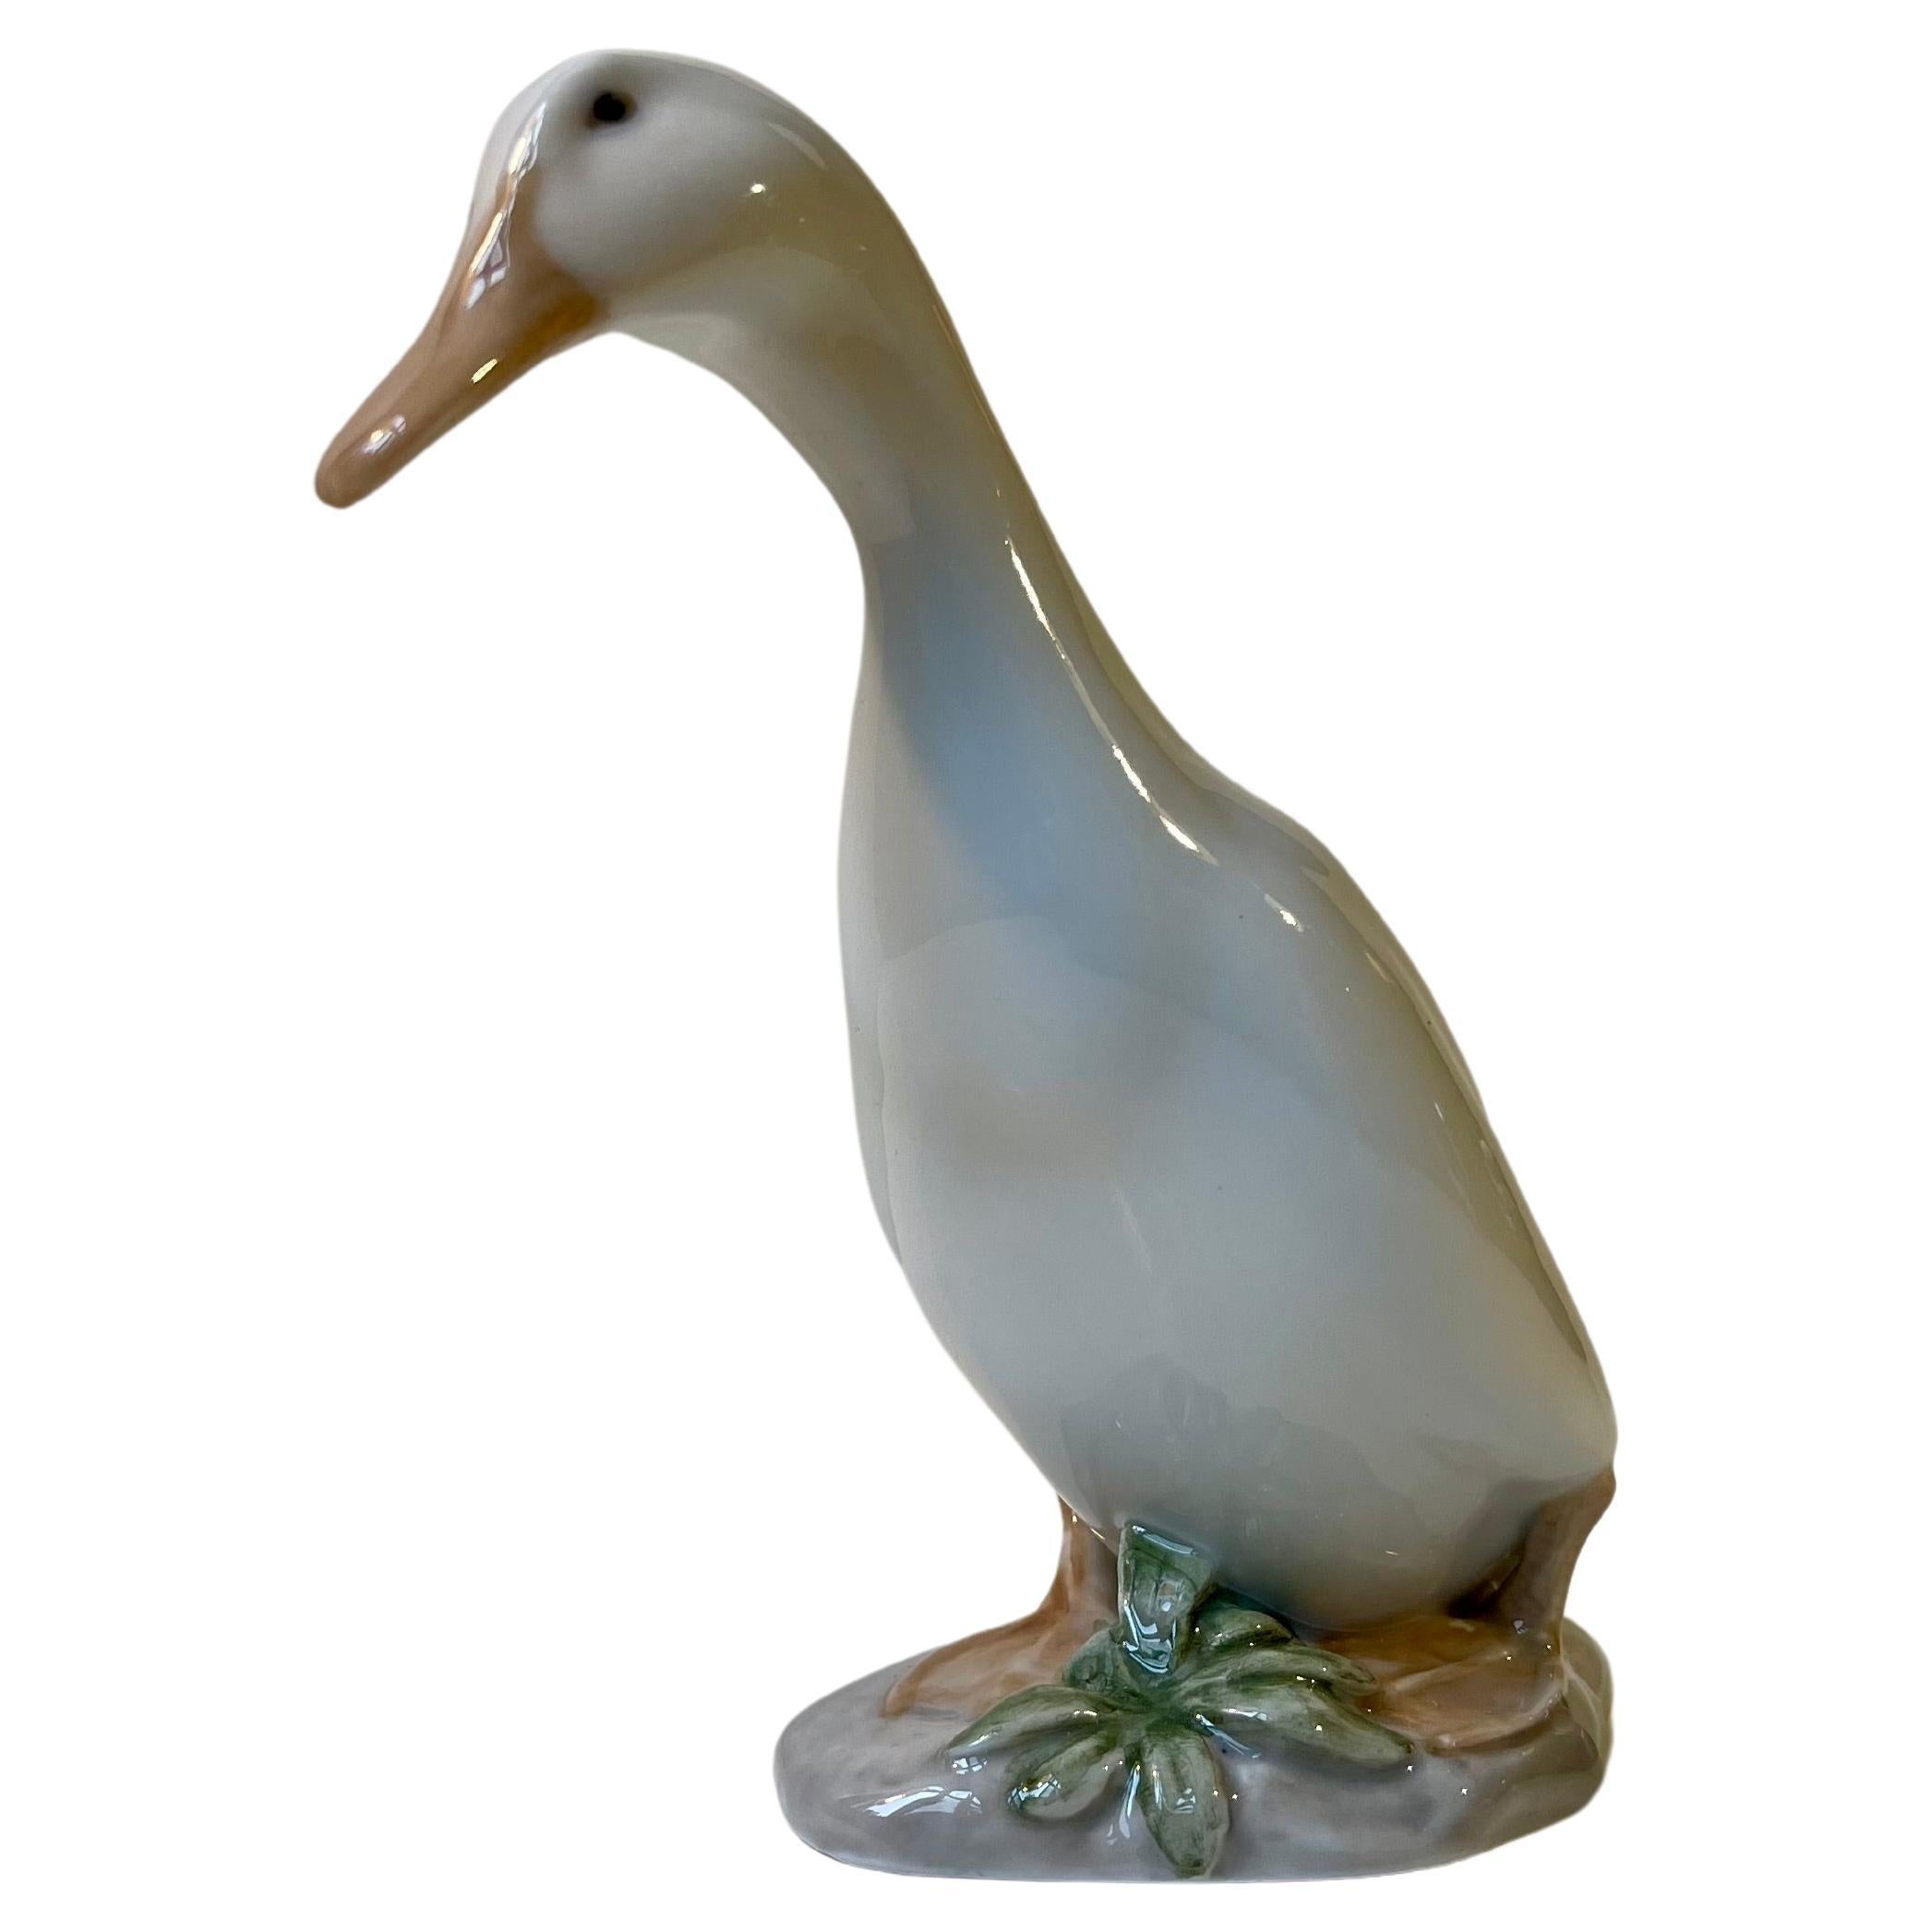 Royal Copenhagen Antique White Duck - Drake Figurine in Glazed Porcelain